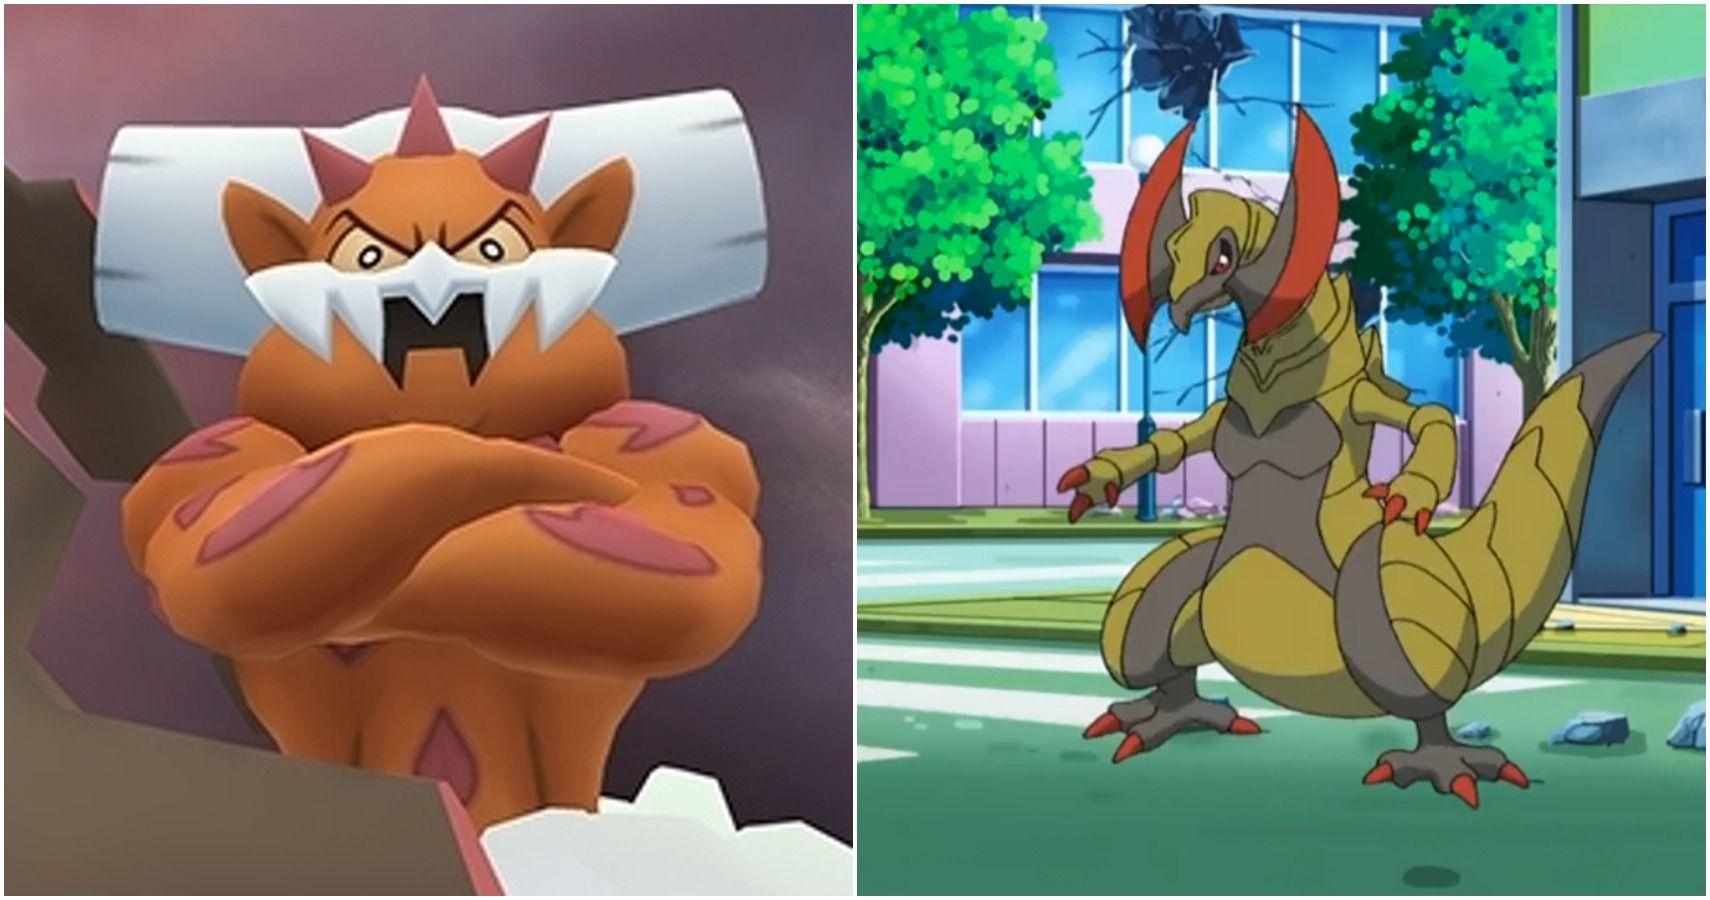 Pokémon - Generation V Pokémon